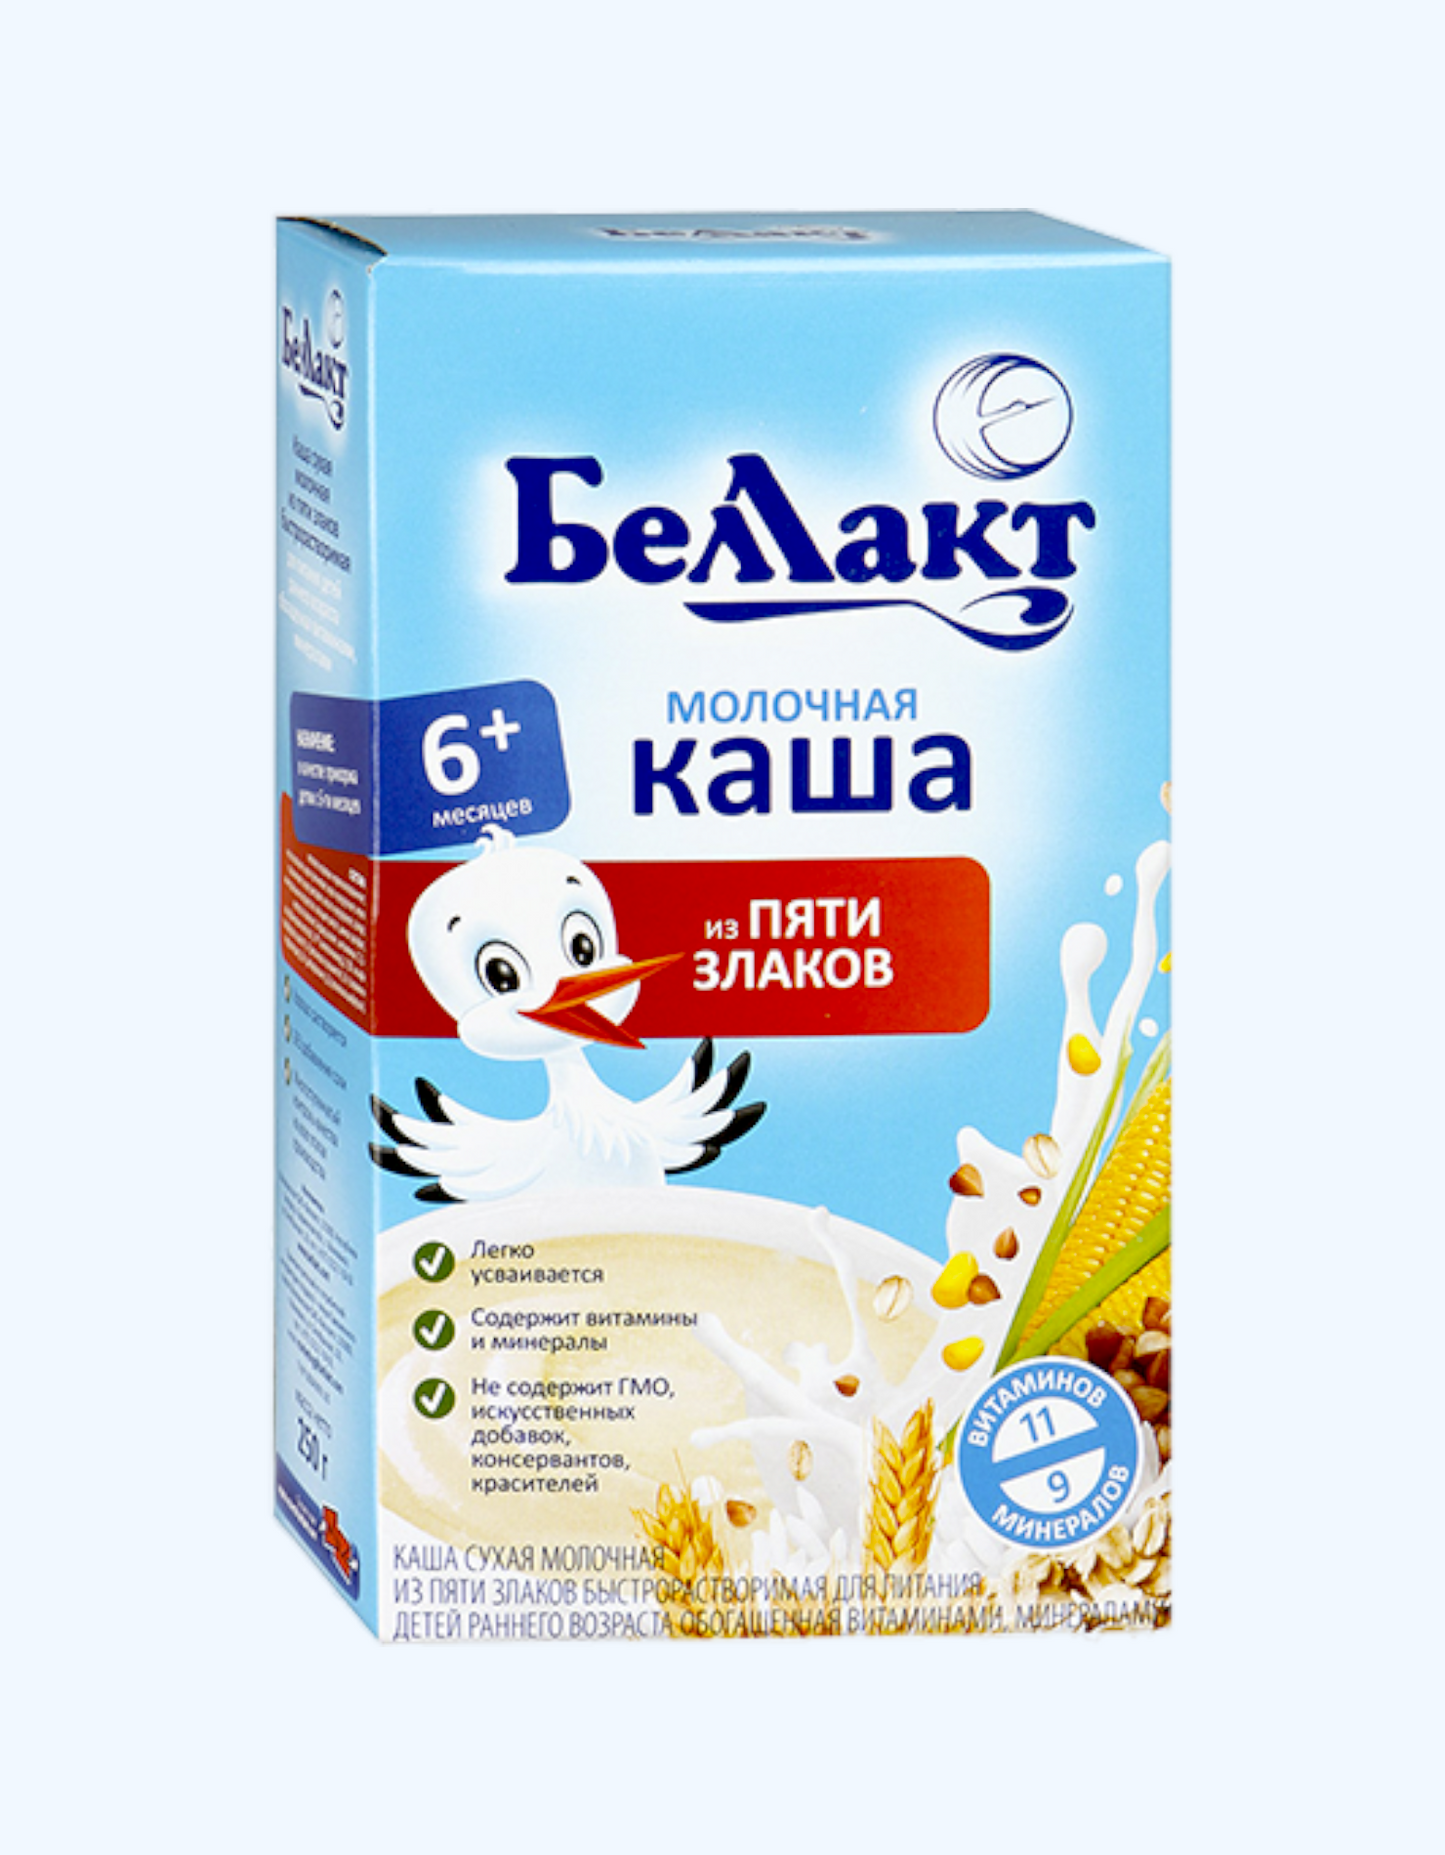 Беллакт Молочная каша 5 злаков с витаминами и минералами, 250 г